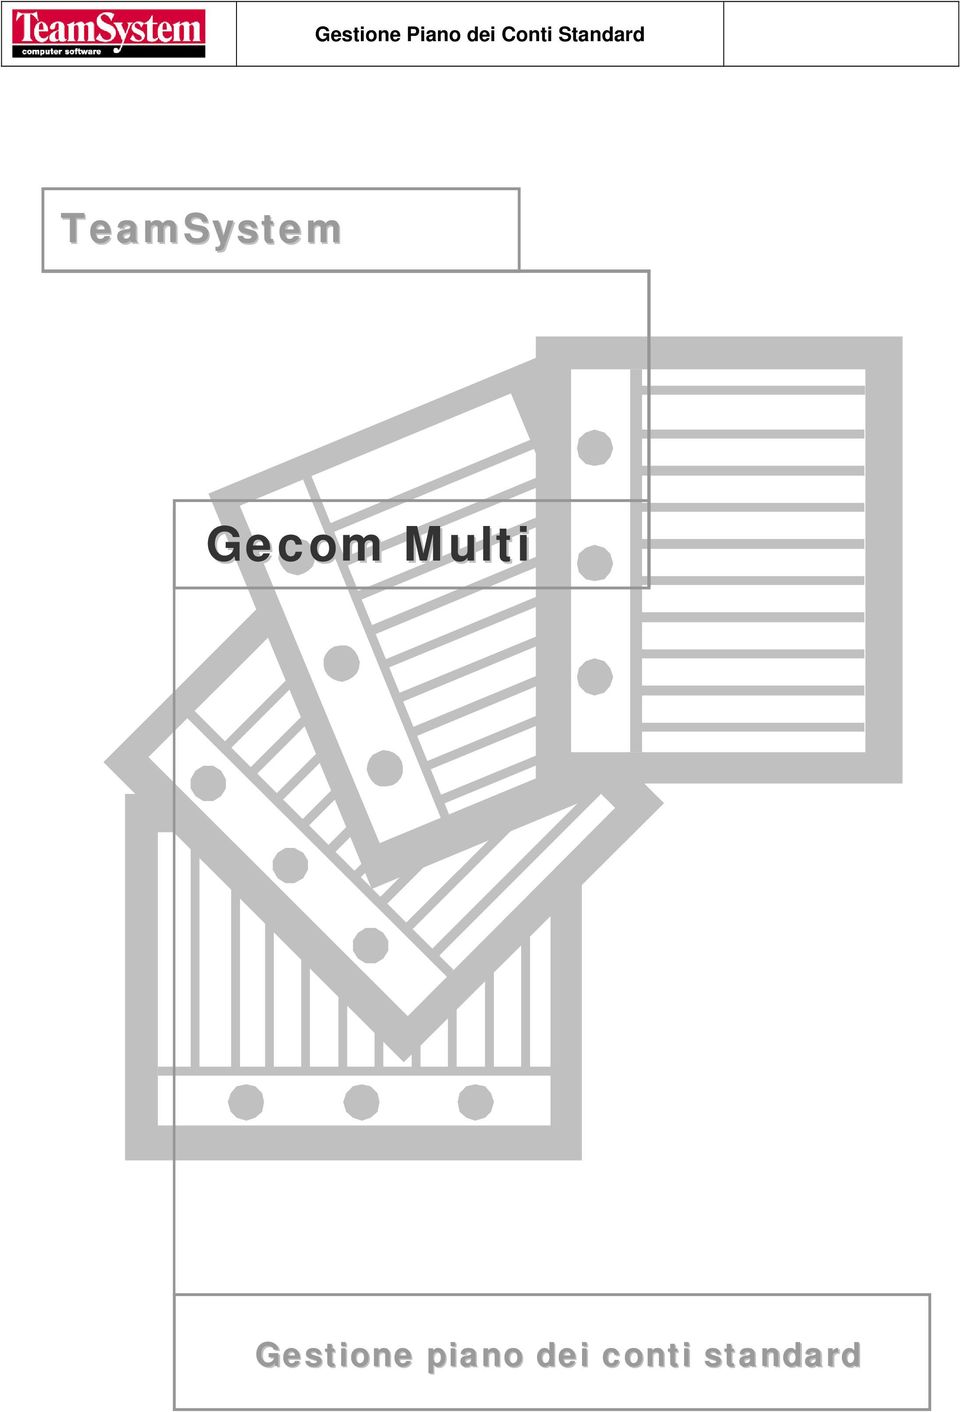 TeamSystem Gecom Multi